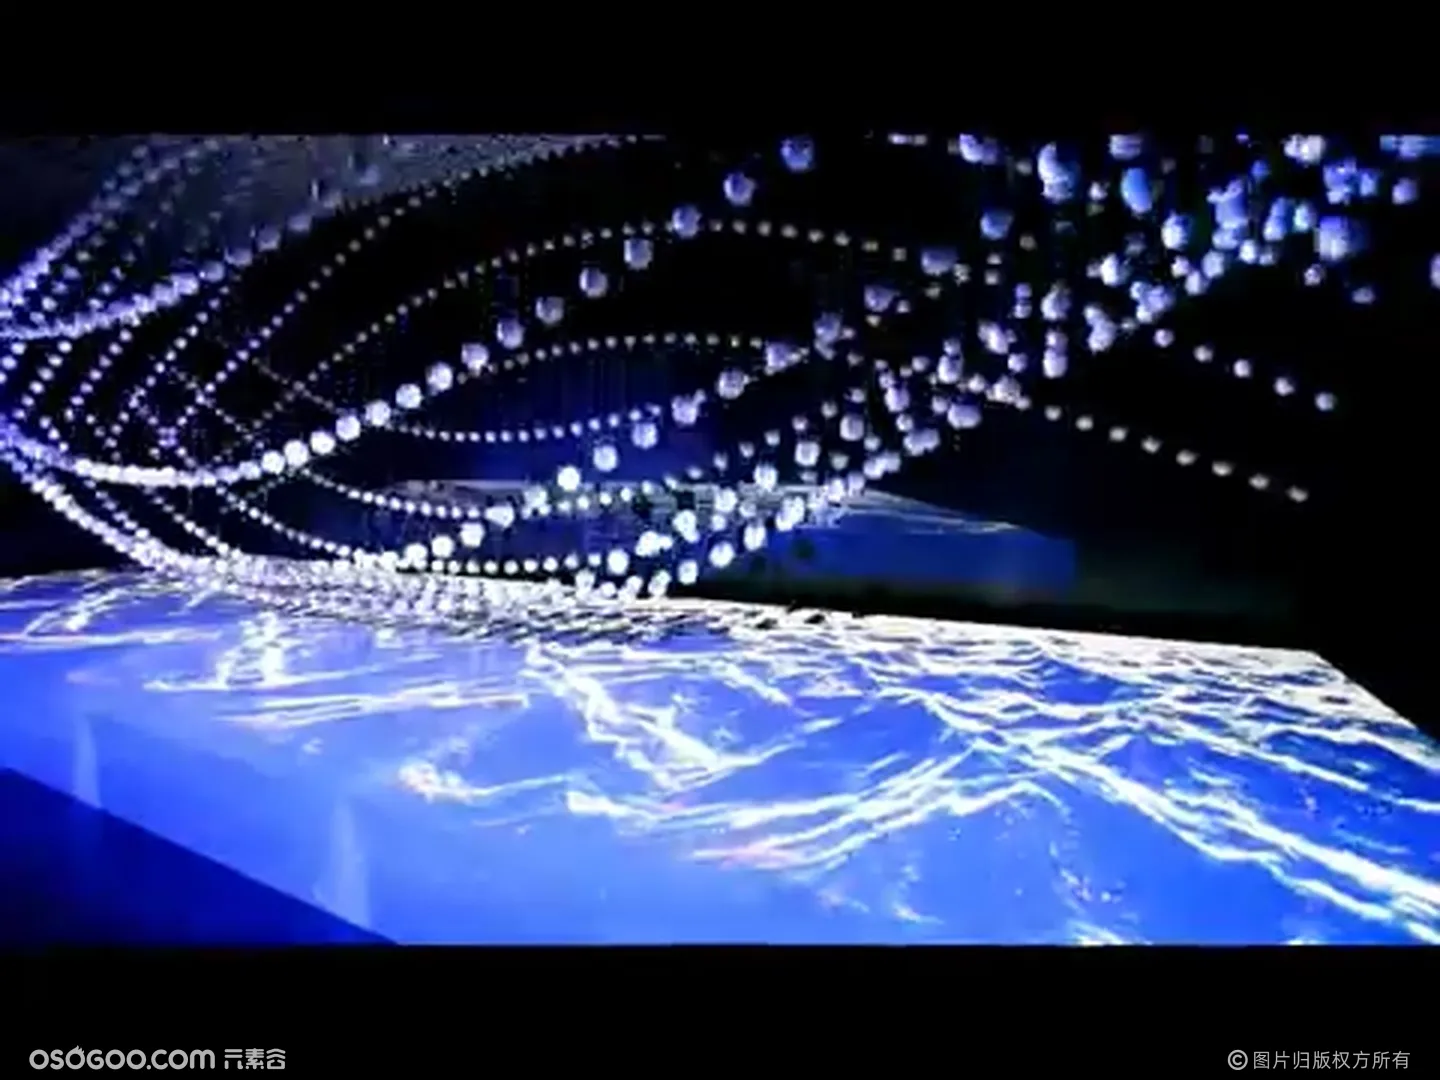 沉浸式空间模拟|发布会科技秀|裸眼3D映射+LED动能球 